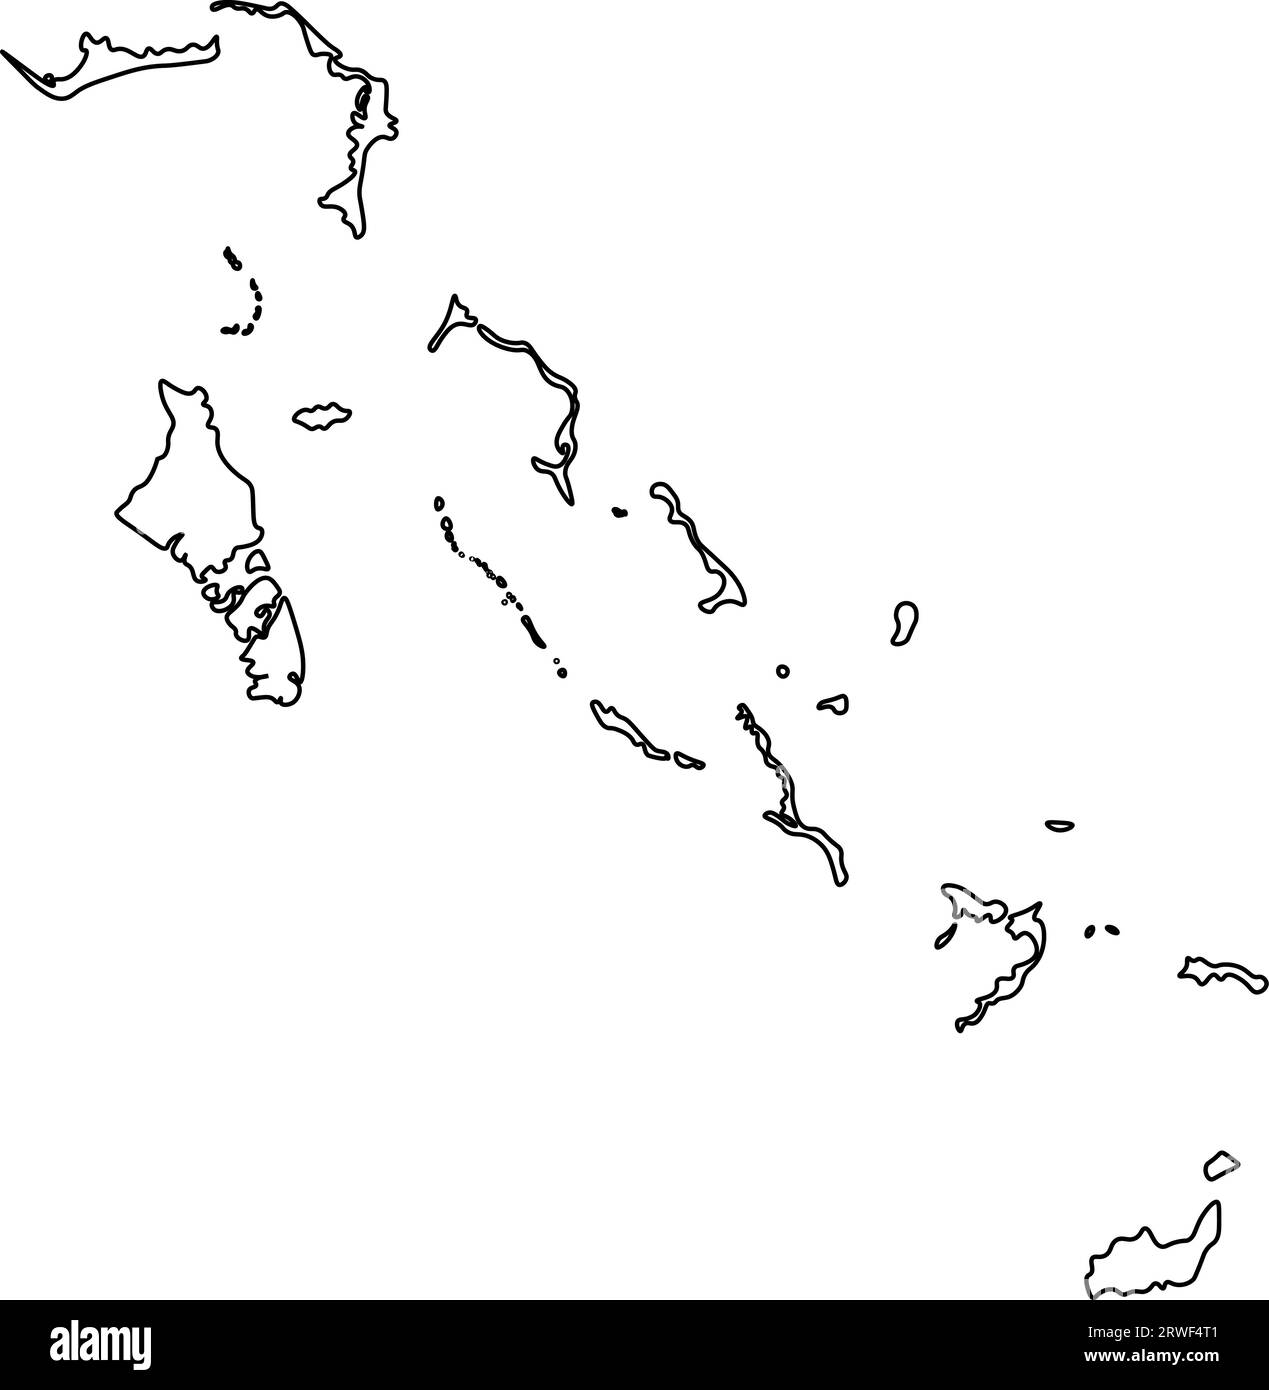 Icona di illustrazione vettoriale isolata con linea nera della mappa semplificata delle Bahamas. Illustrazione Vettoriale